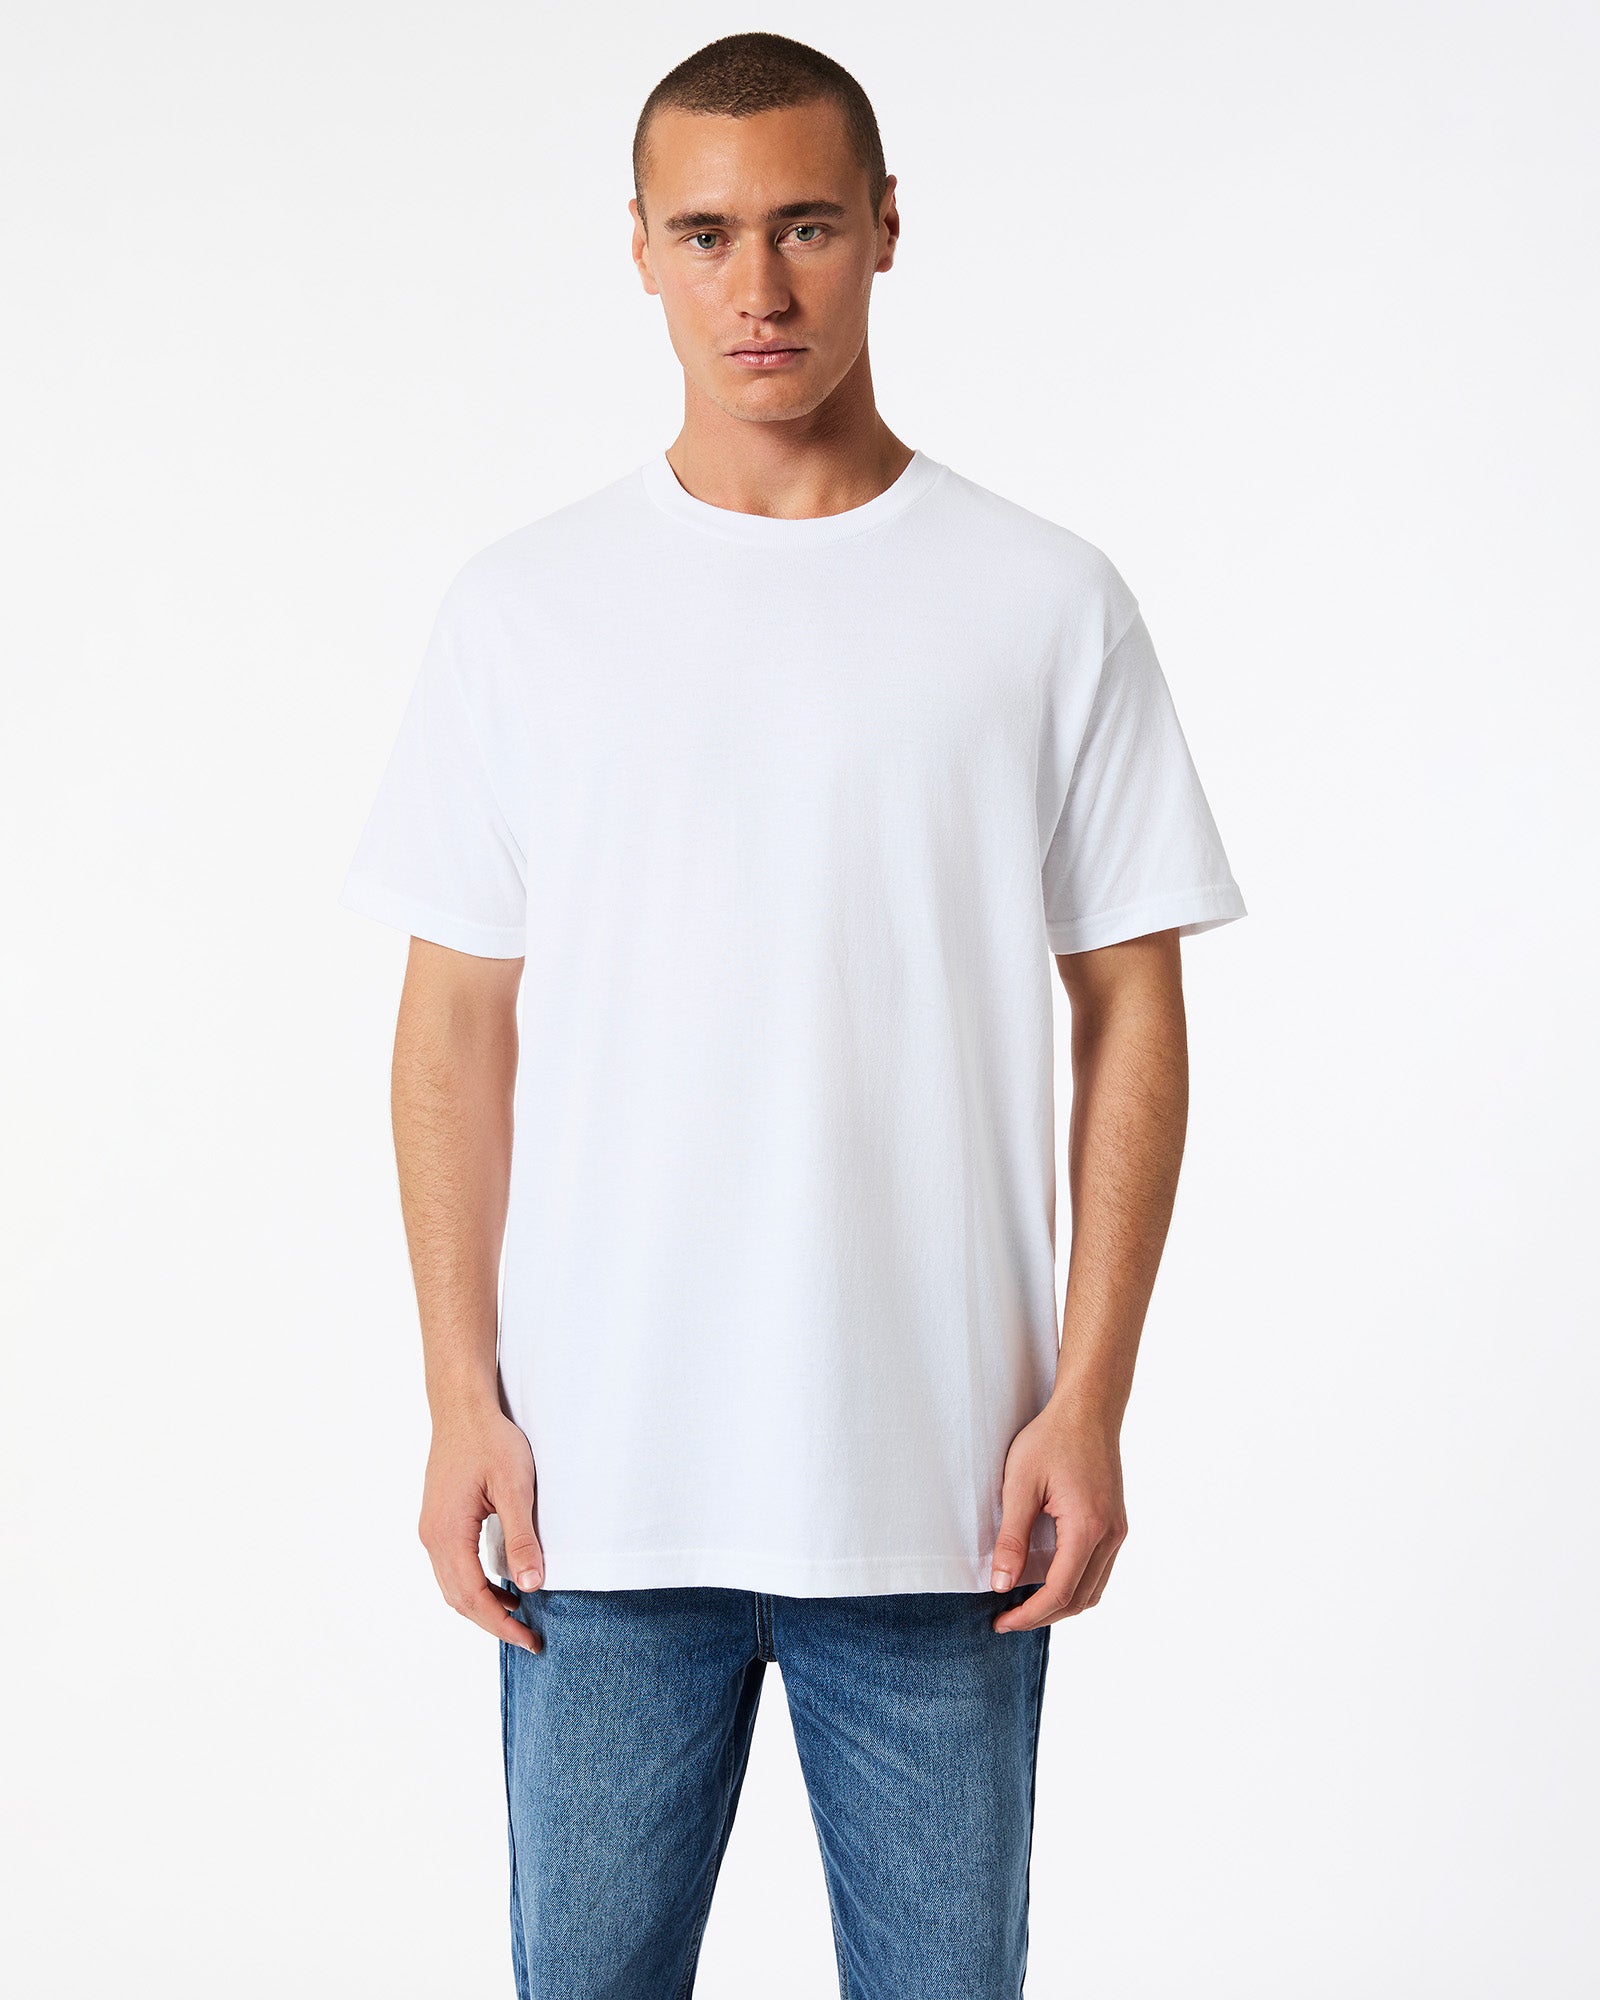 Heavyweight Unisex T-Shirt - White